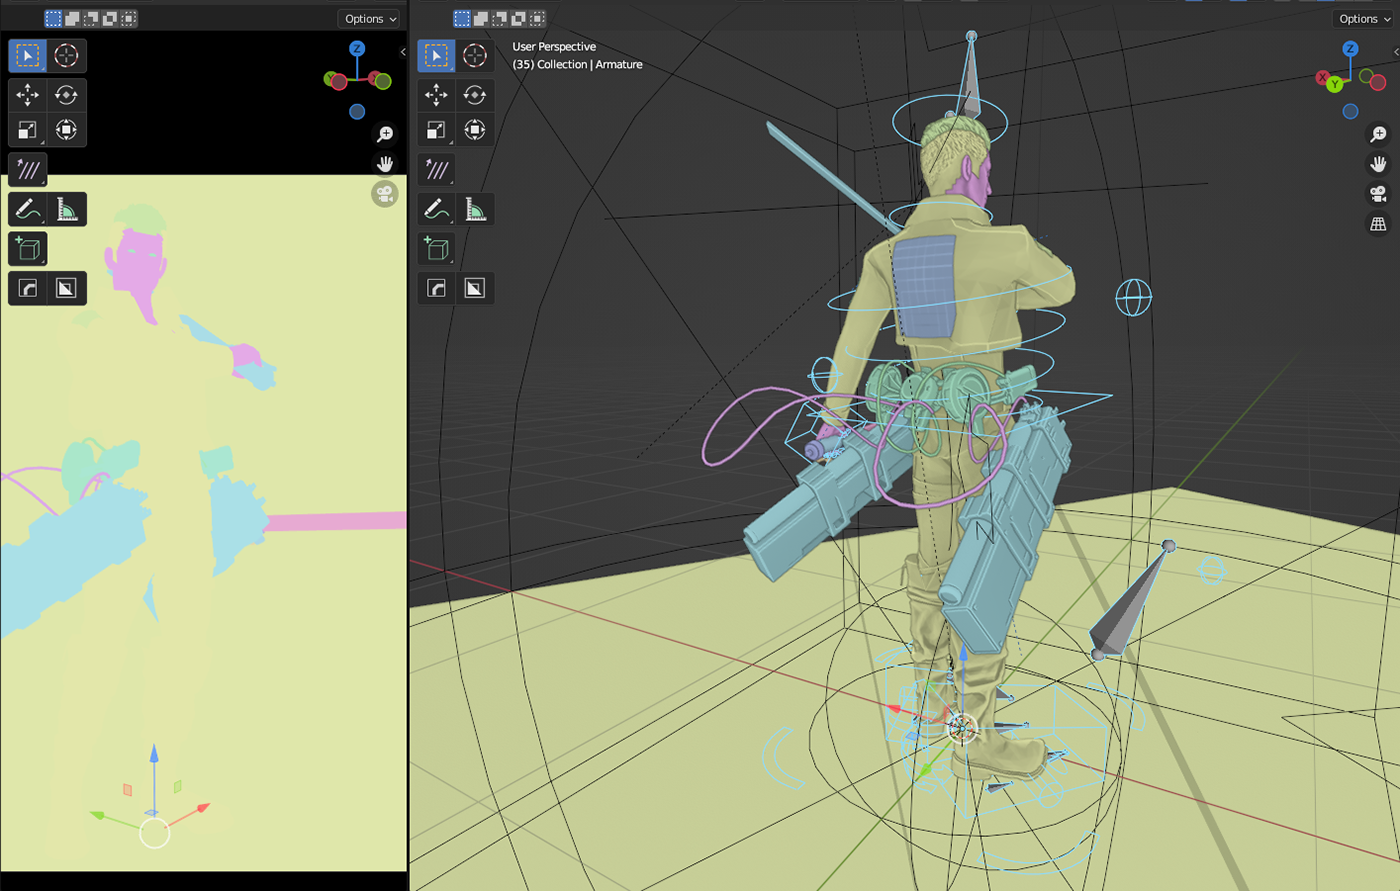 3D 3d modeling blender blender3d CGI Character design  Render sculpture texturing Videogames